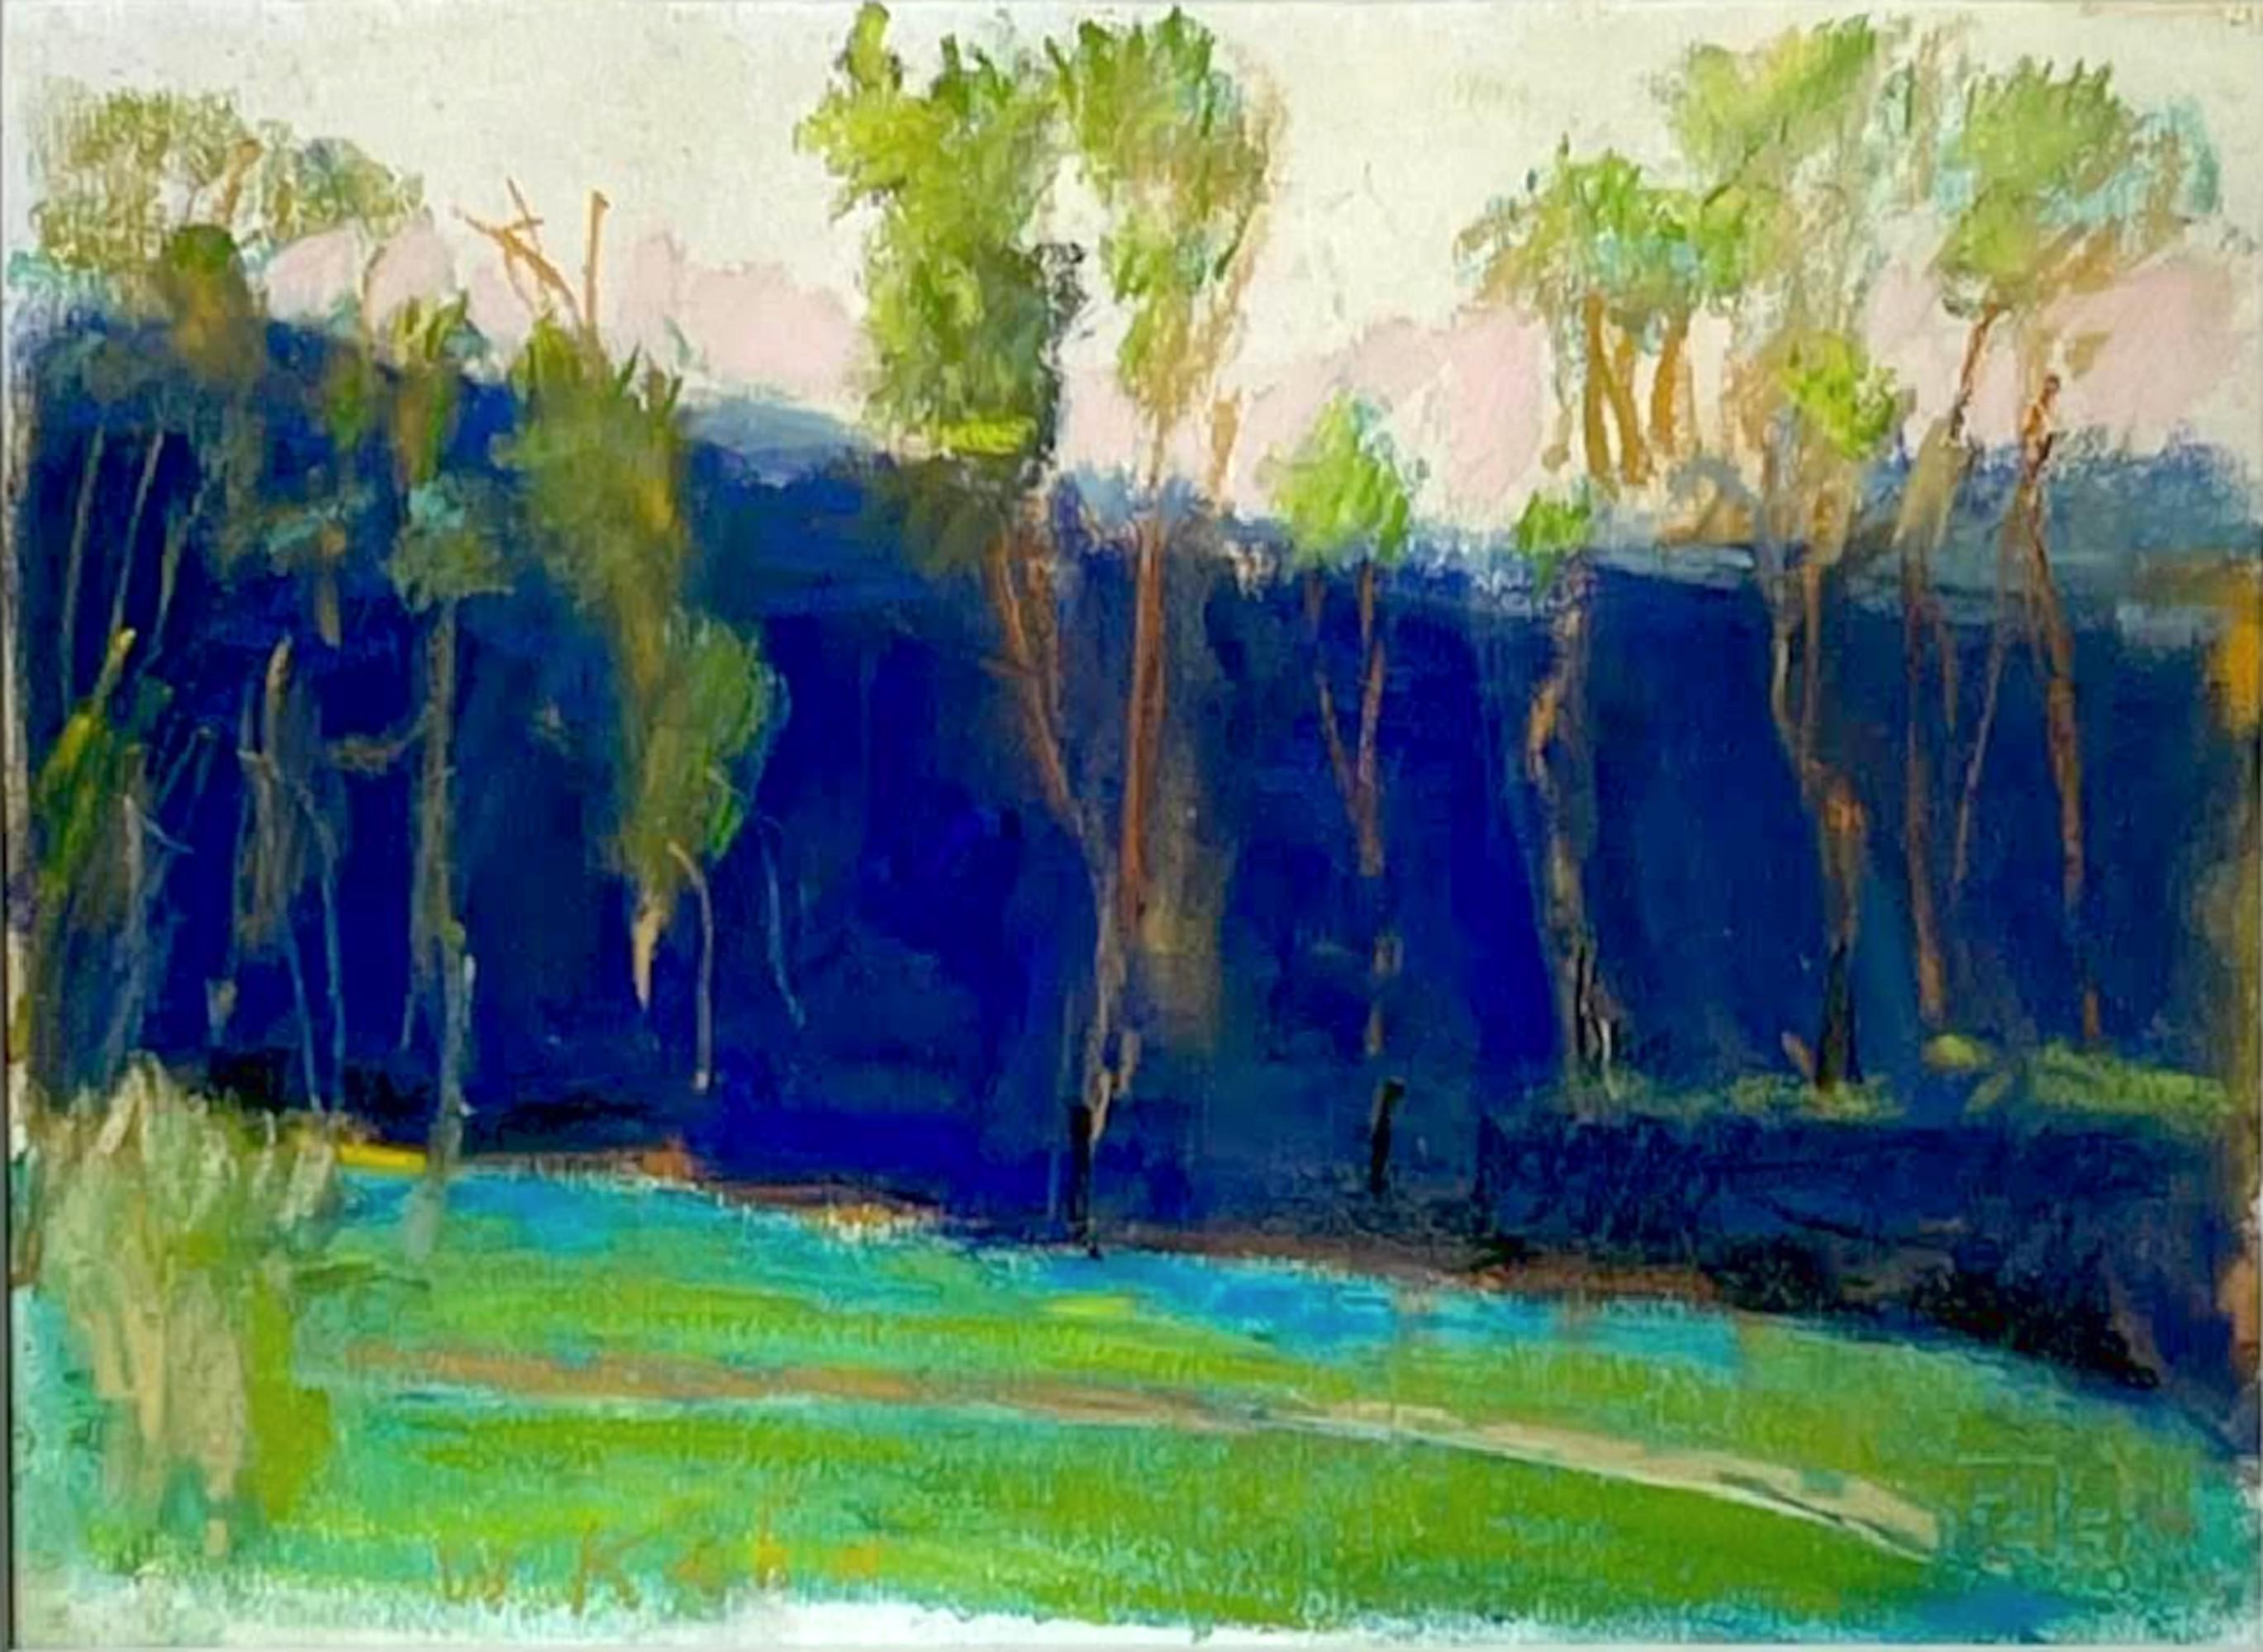 Wolf Kahn Landscape Art - Blau-Grün (Blue-Green) unique pastel painting